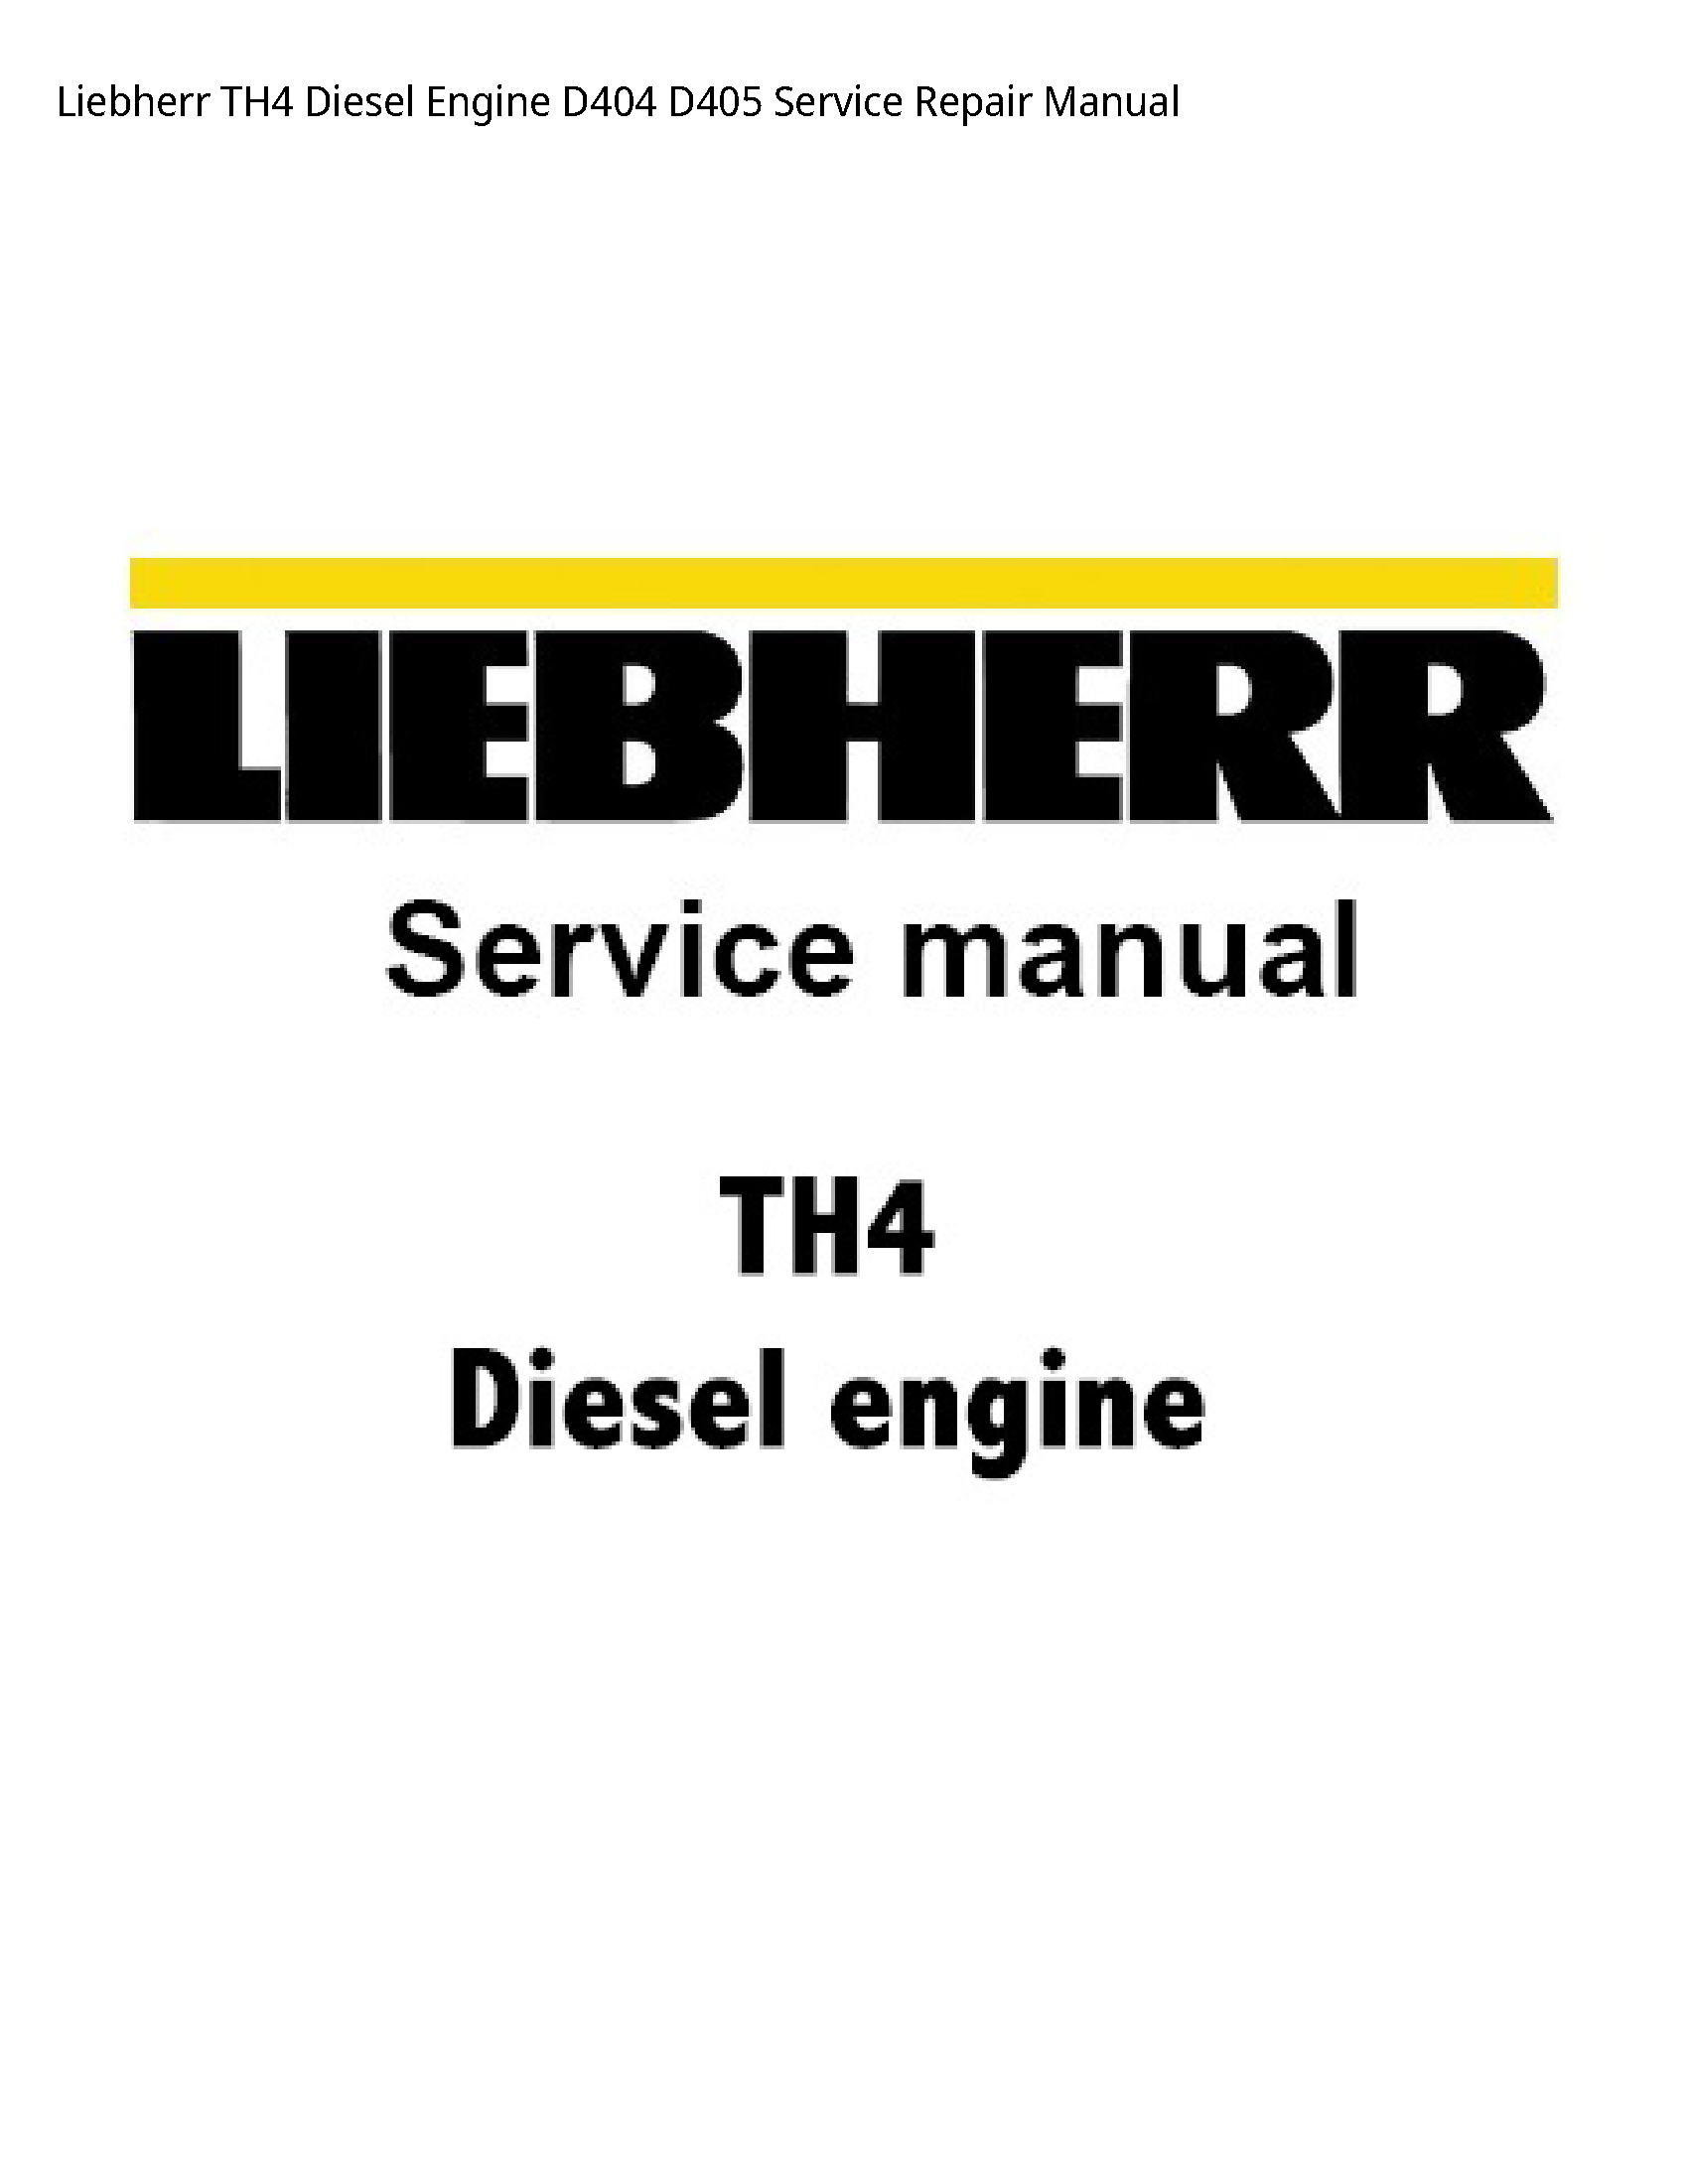 Liebherr TH4 Diesel Engine manual